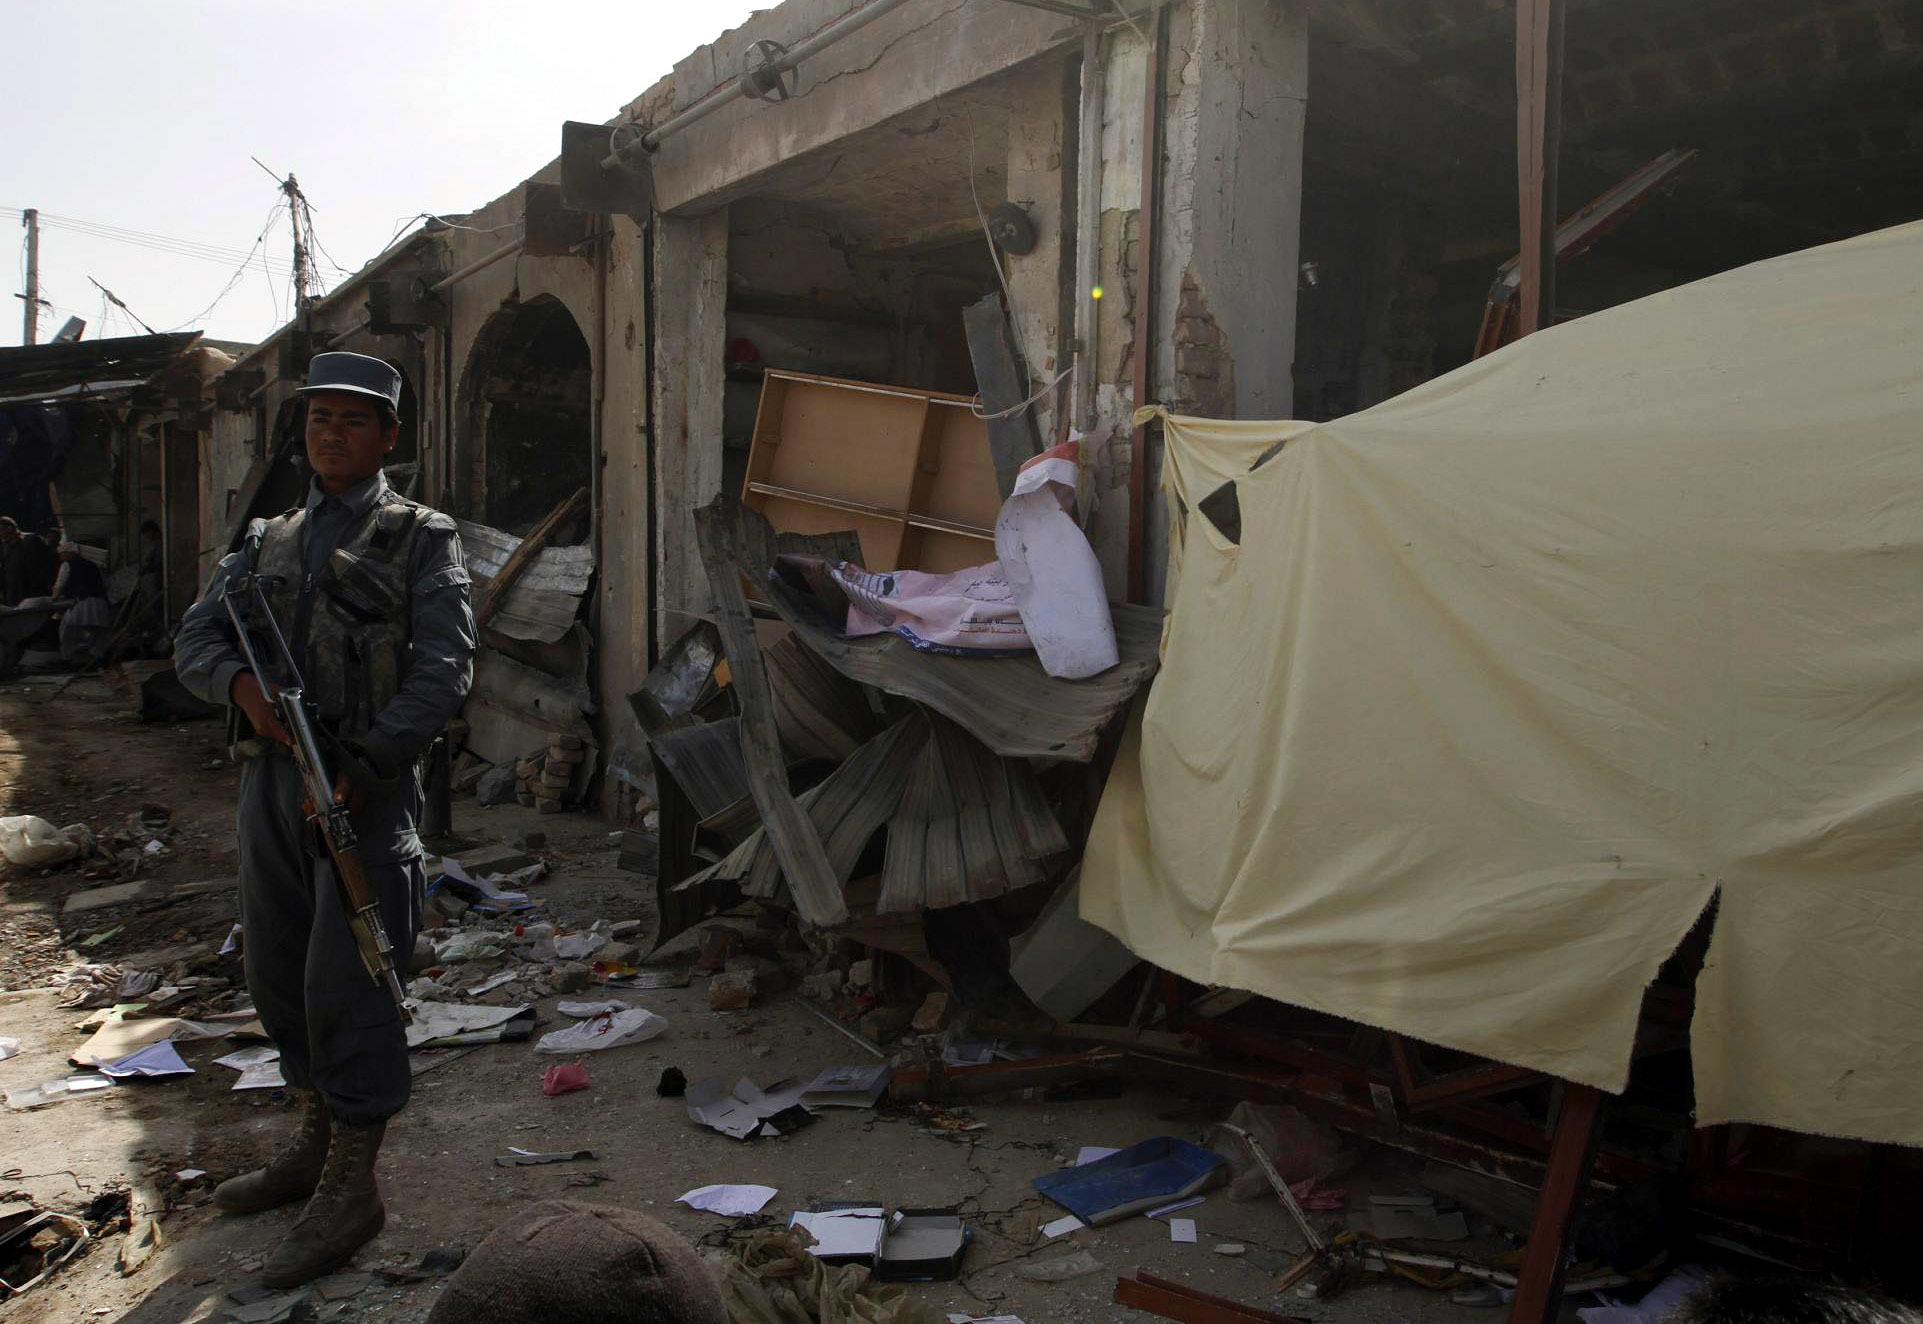 18χρονος ανατινάχθηκε στη λαϊκή αγορά στο Αφγανιστάν και σκοτώθηκαν 7 άτομα